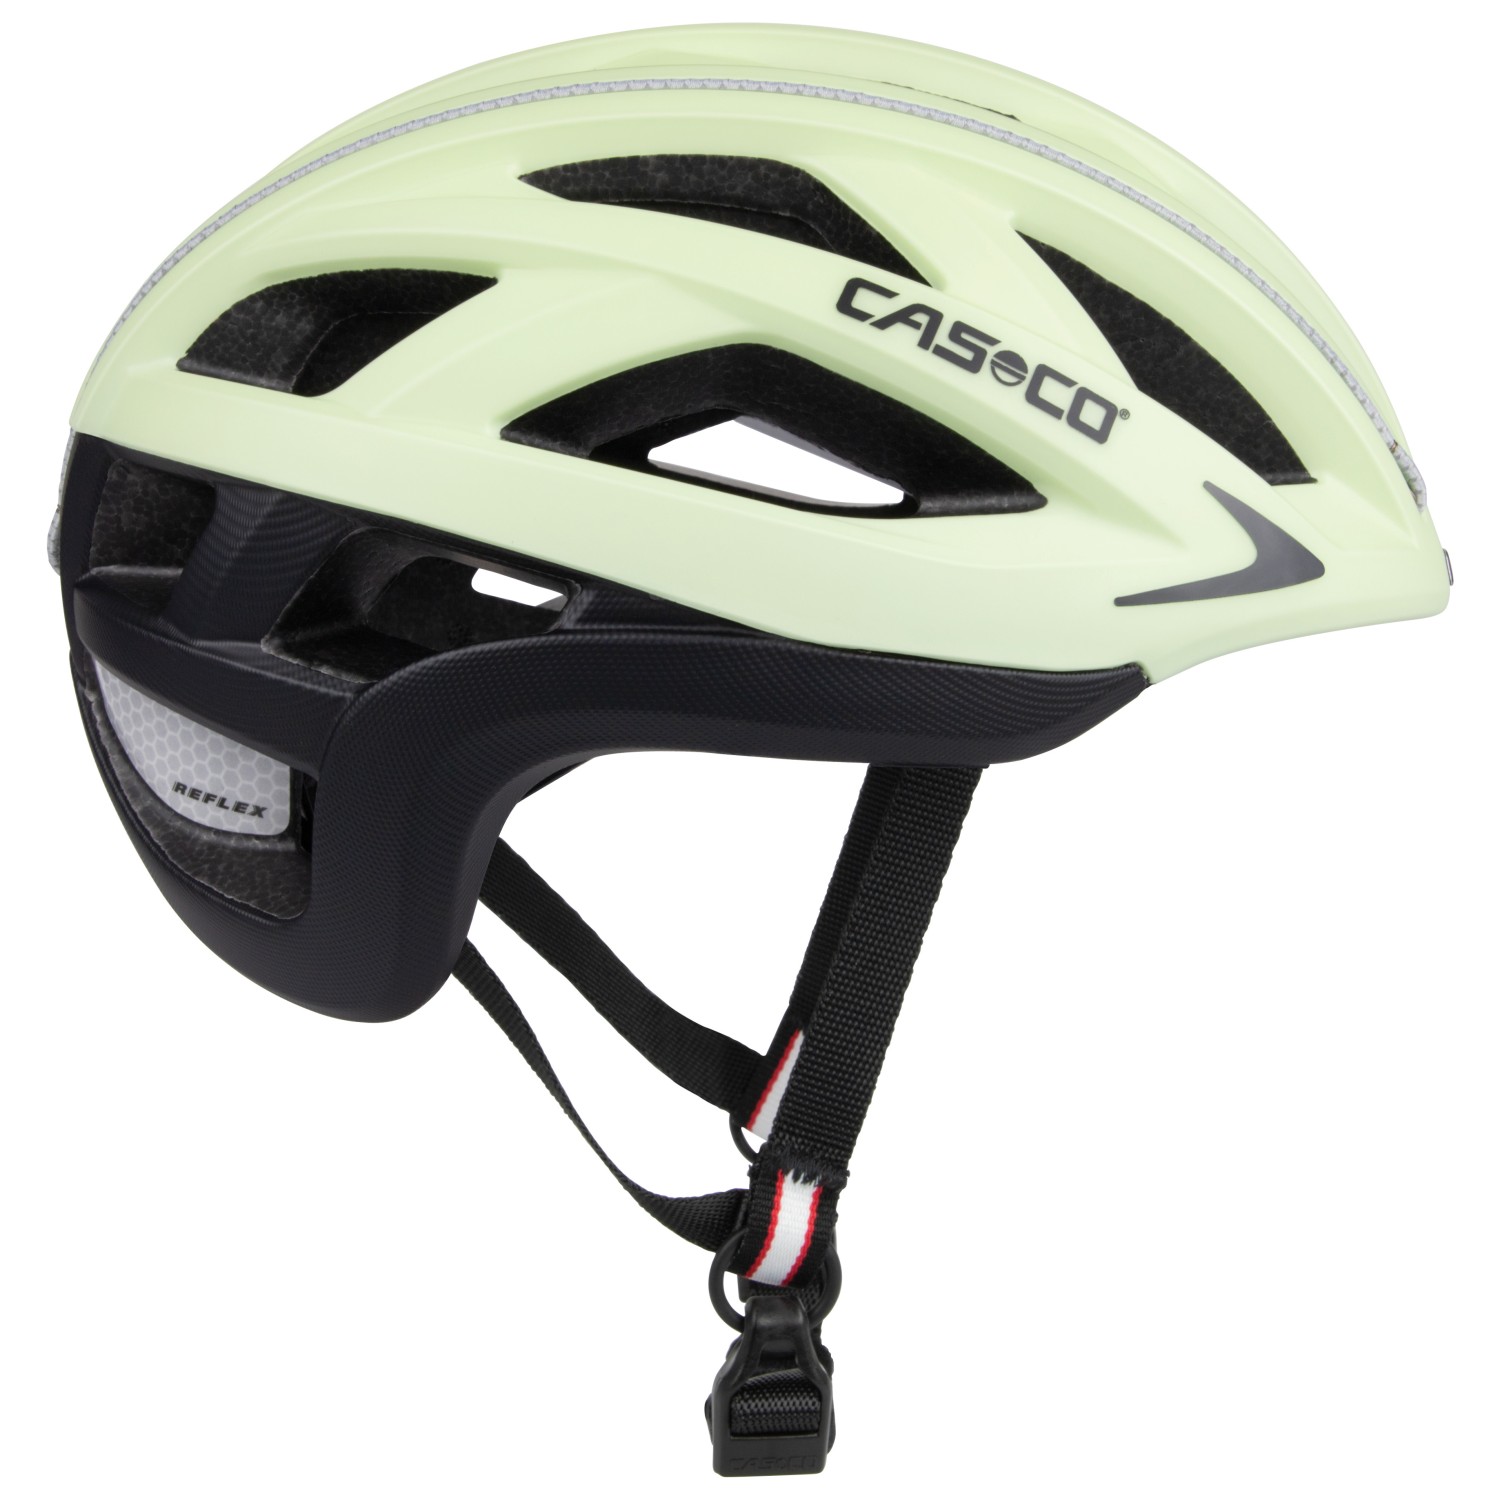 Велосипедный шлем Casco Cuda 2 Strada, цвет Light Yellow шлем casco cuda 2